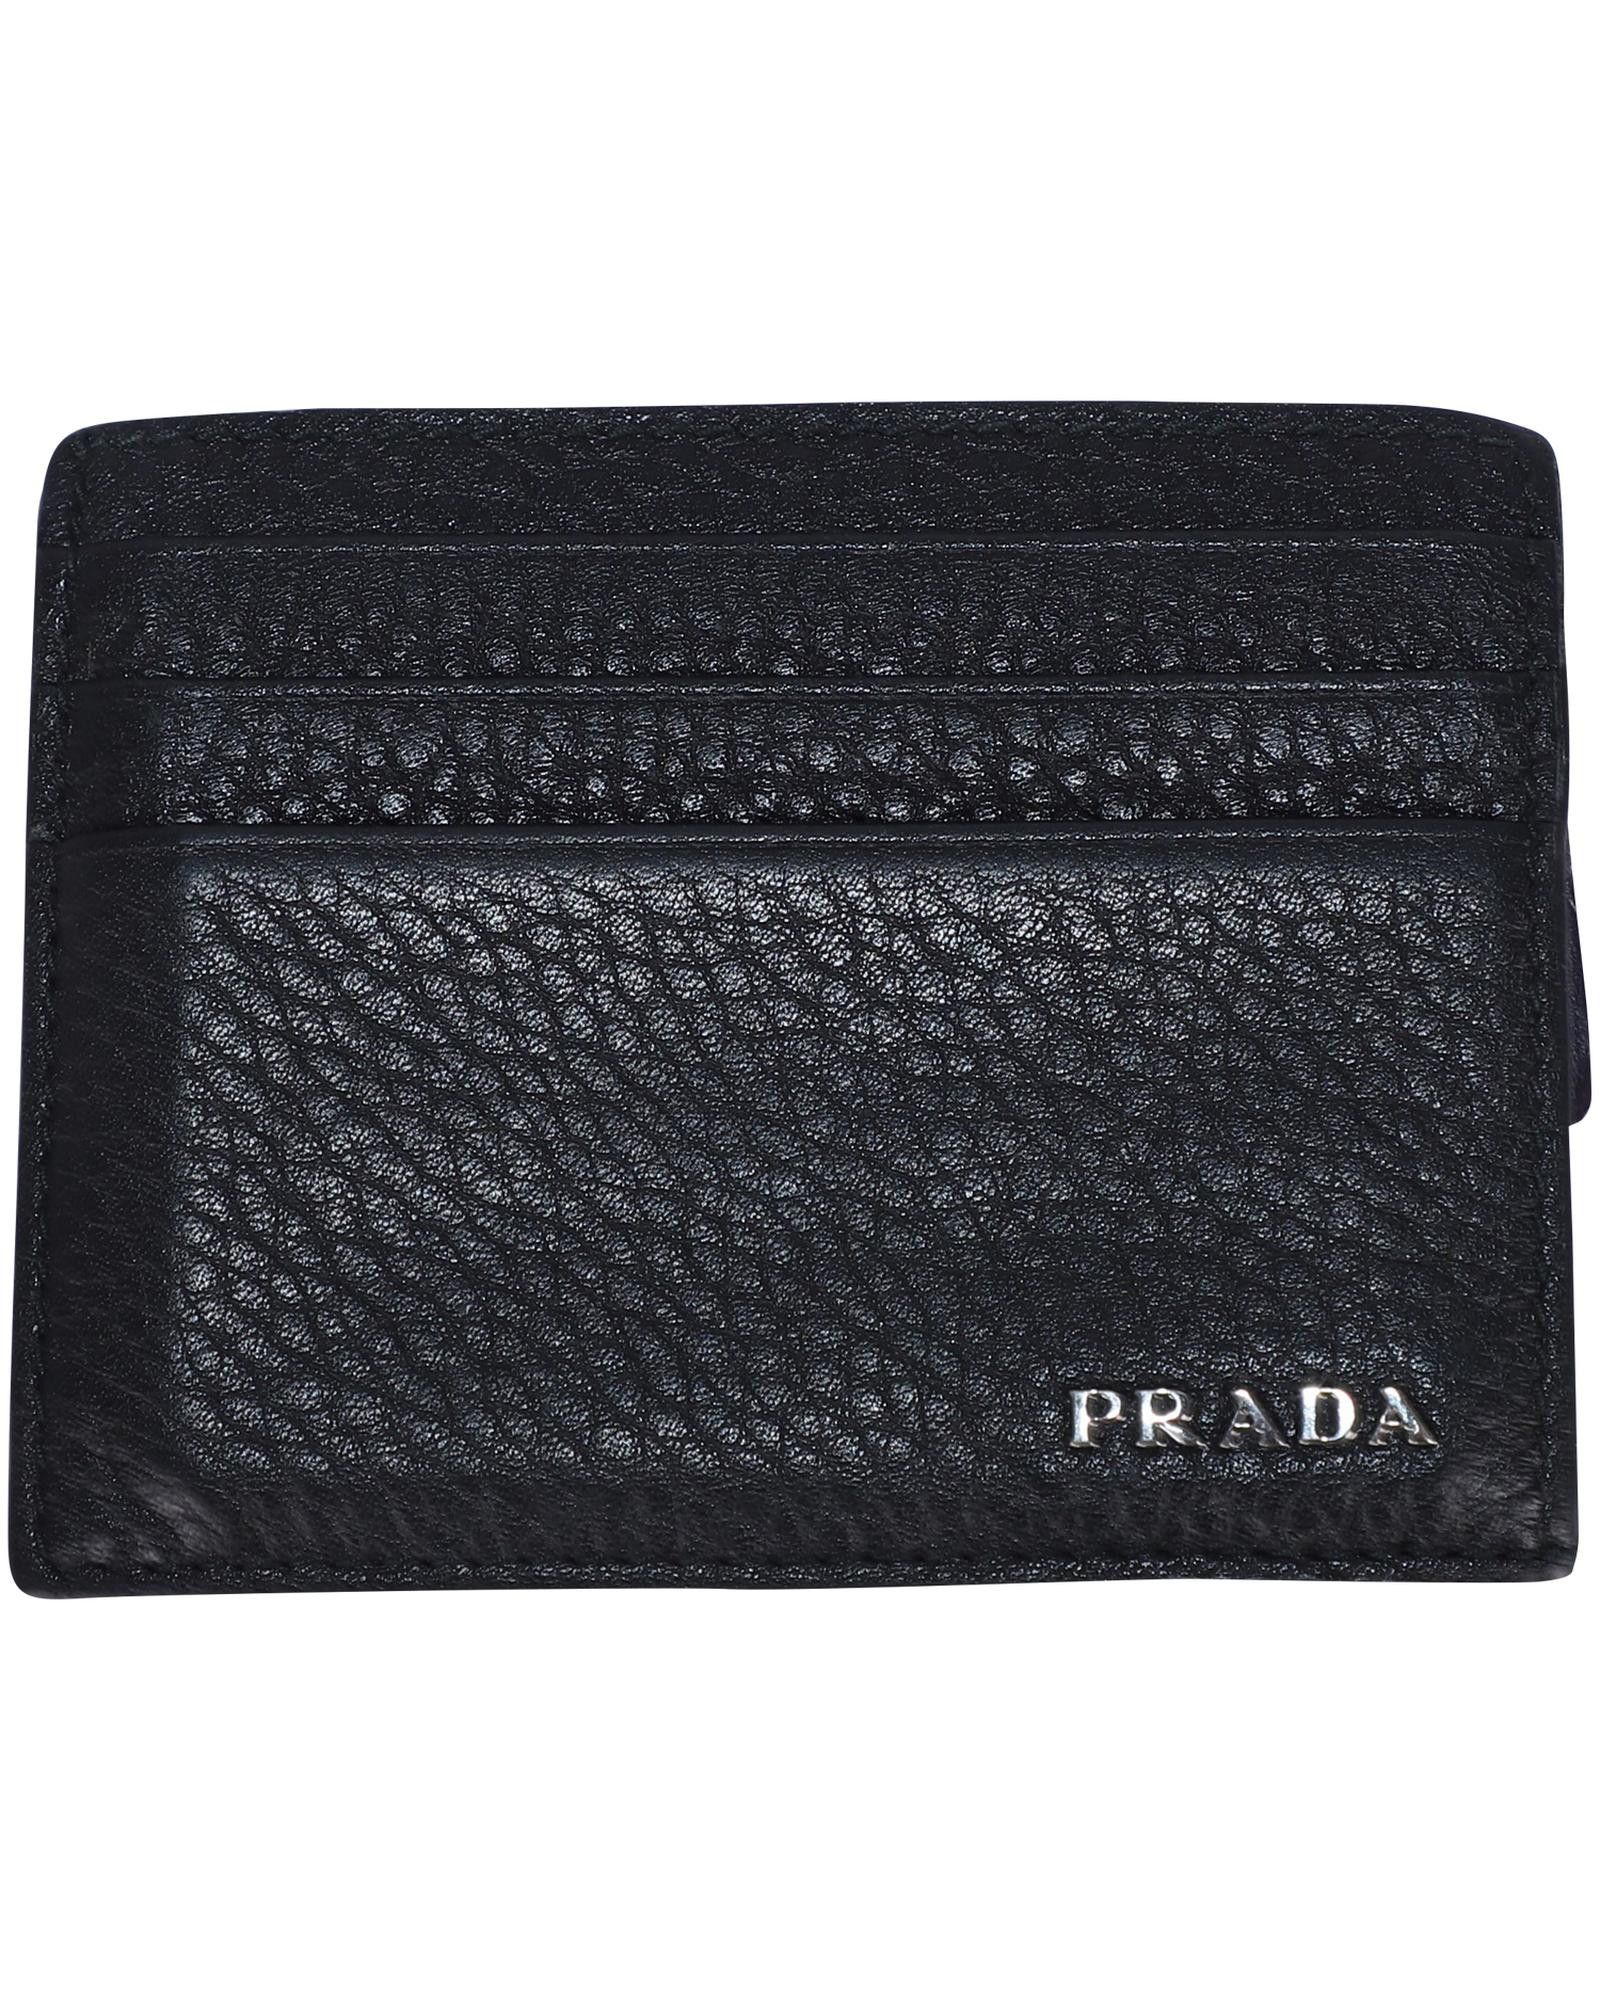 Prada Prada Porta Carte Card Holder in Black Leather | Grailed